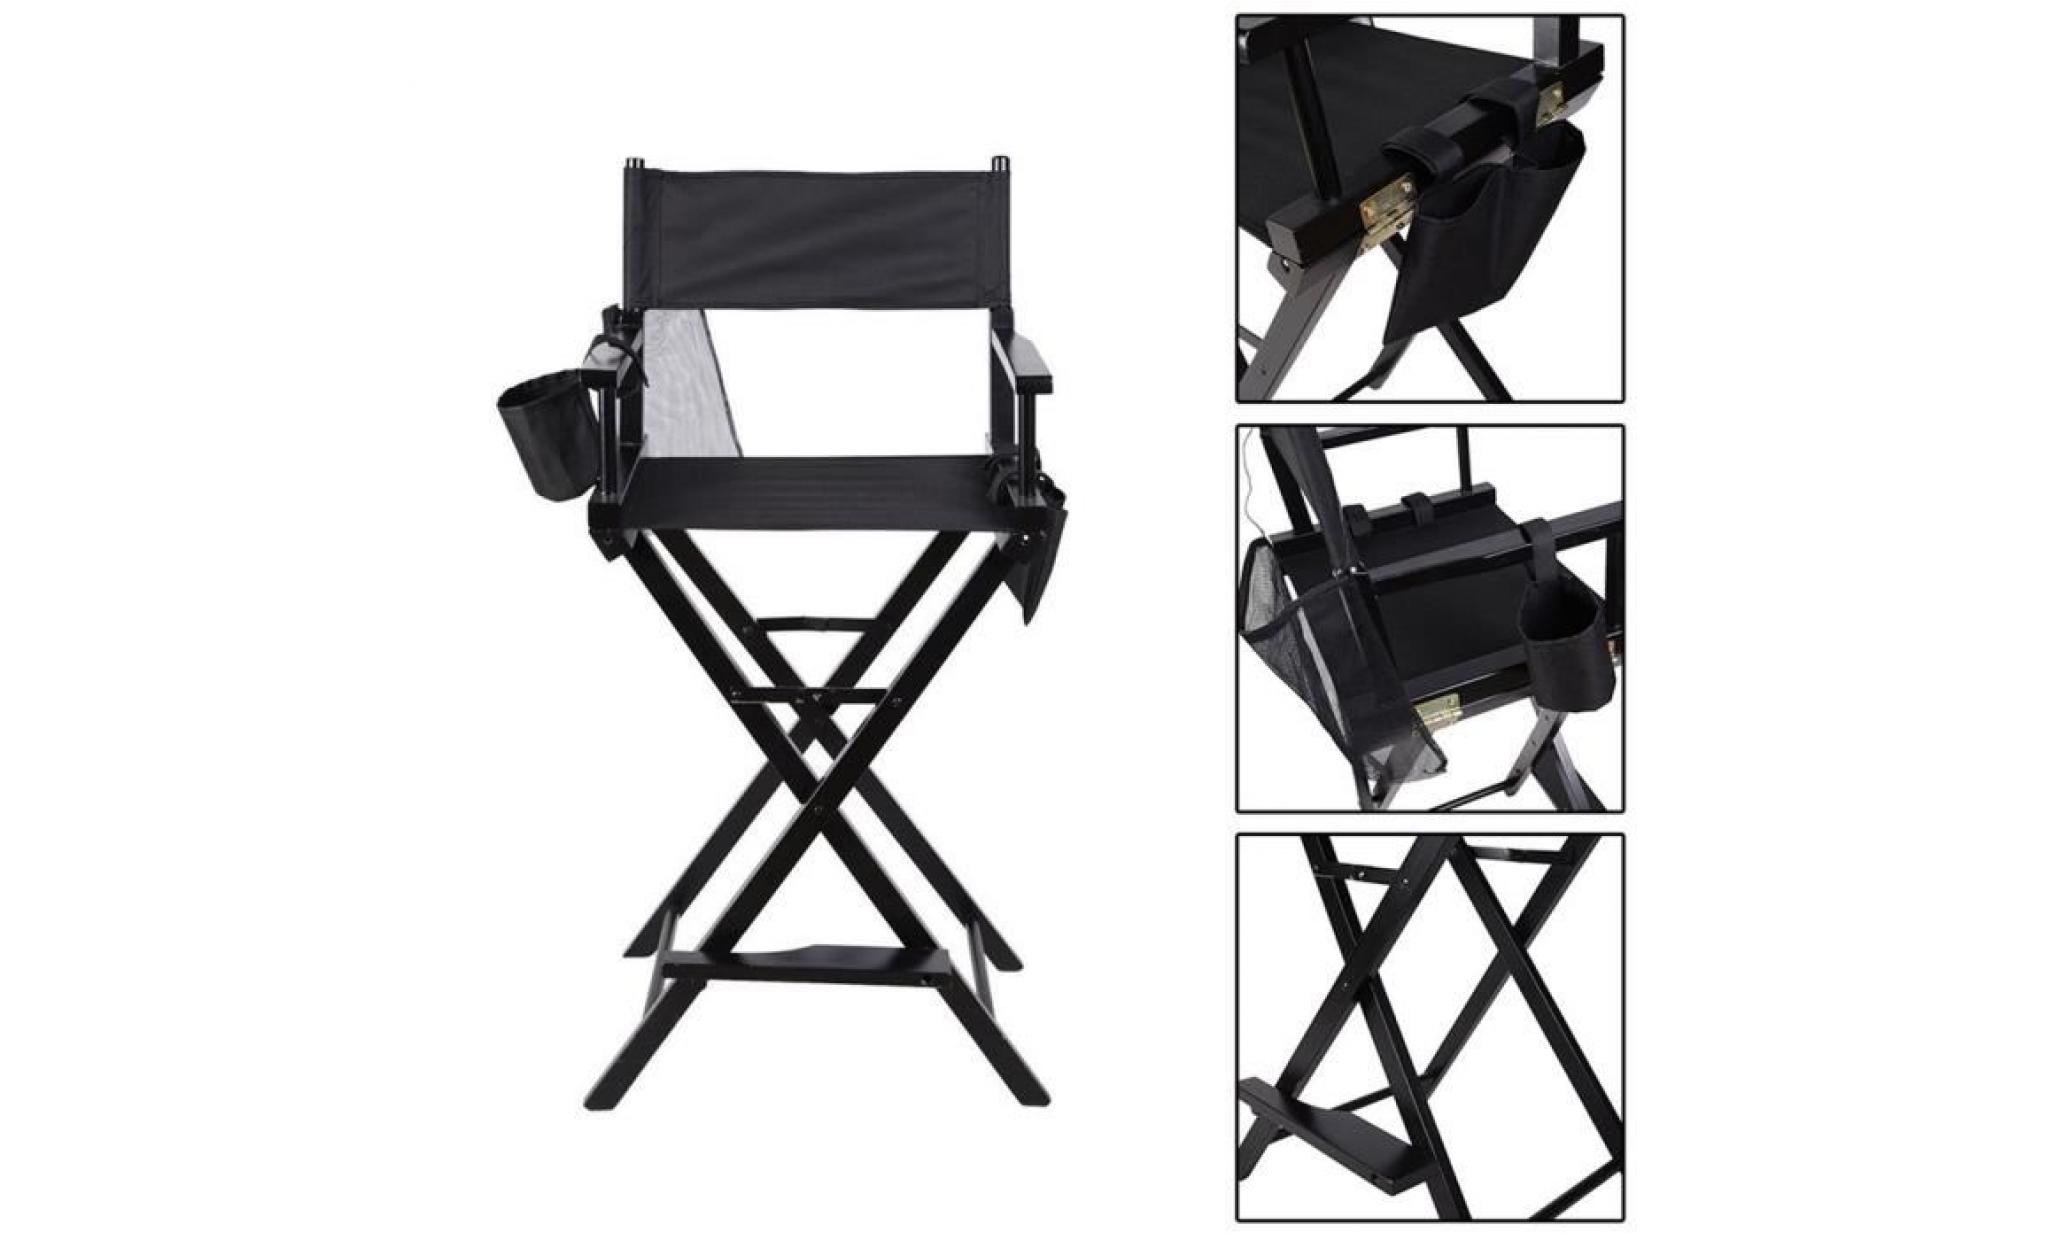 chaise de maquillage en plein air durable stable professionnel en bois 45cm x 55cm x 122cm